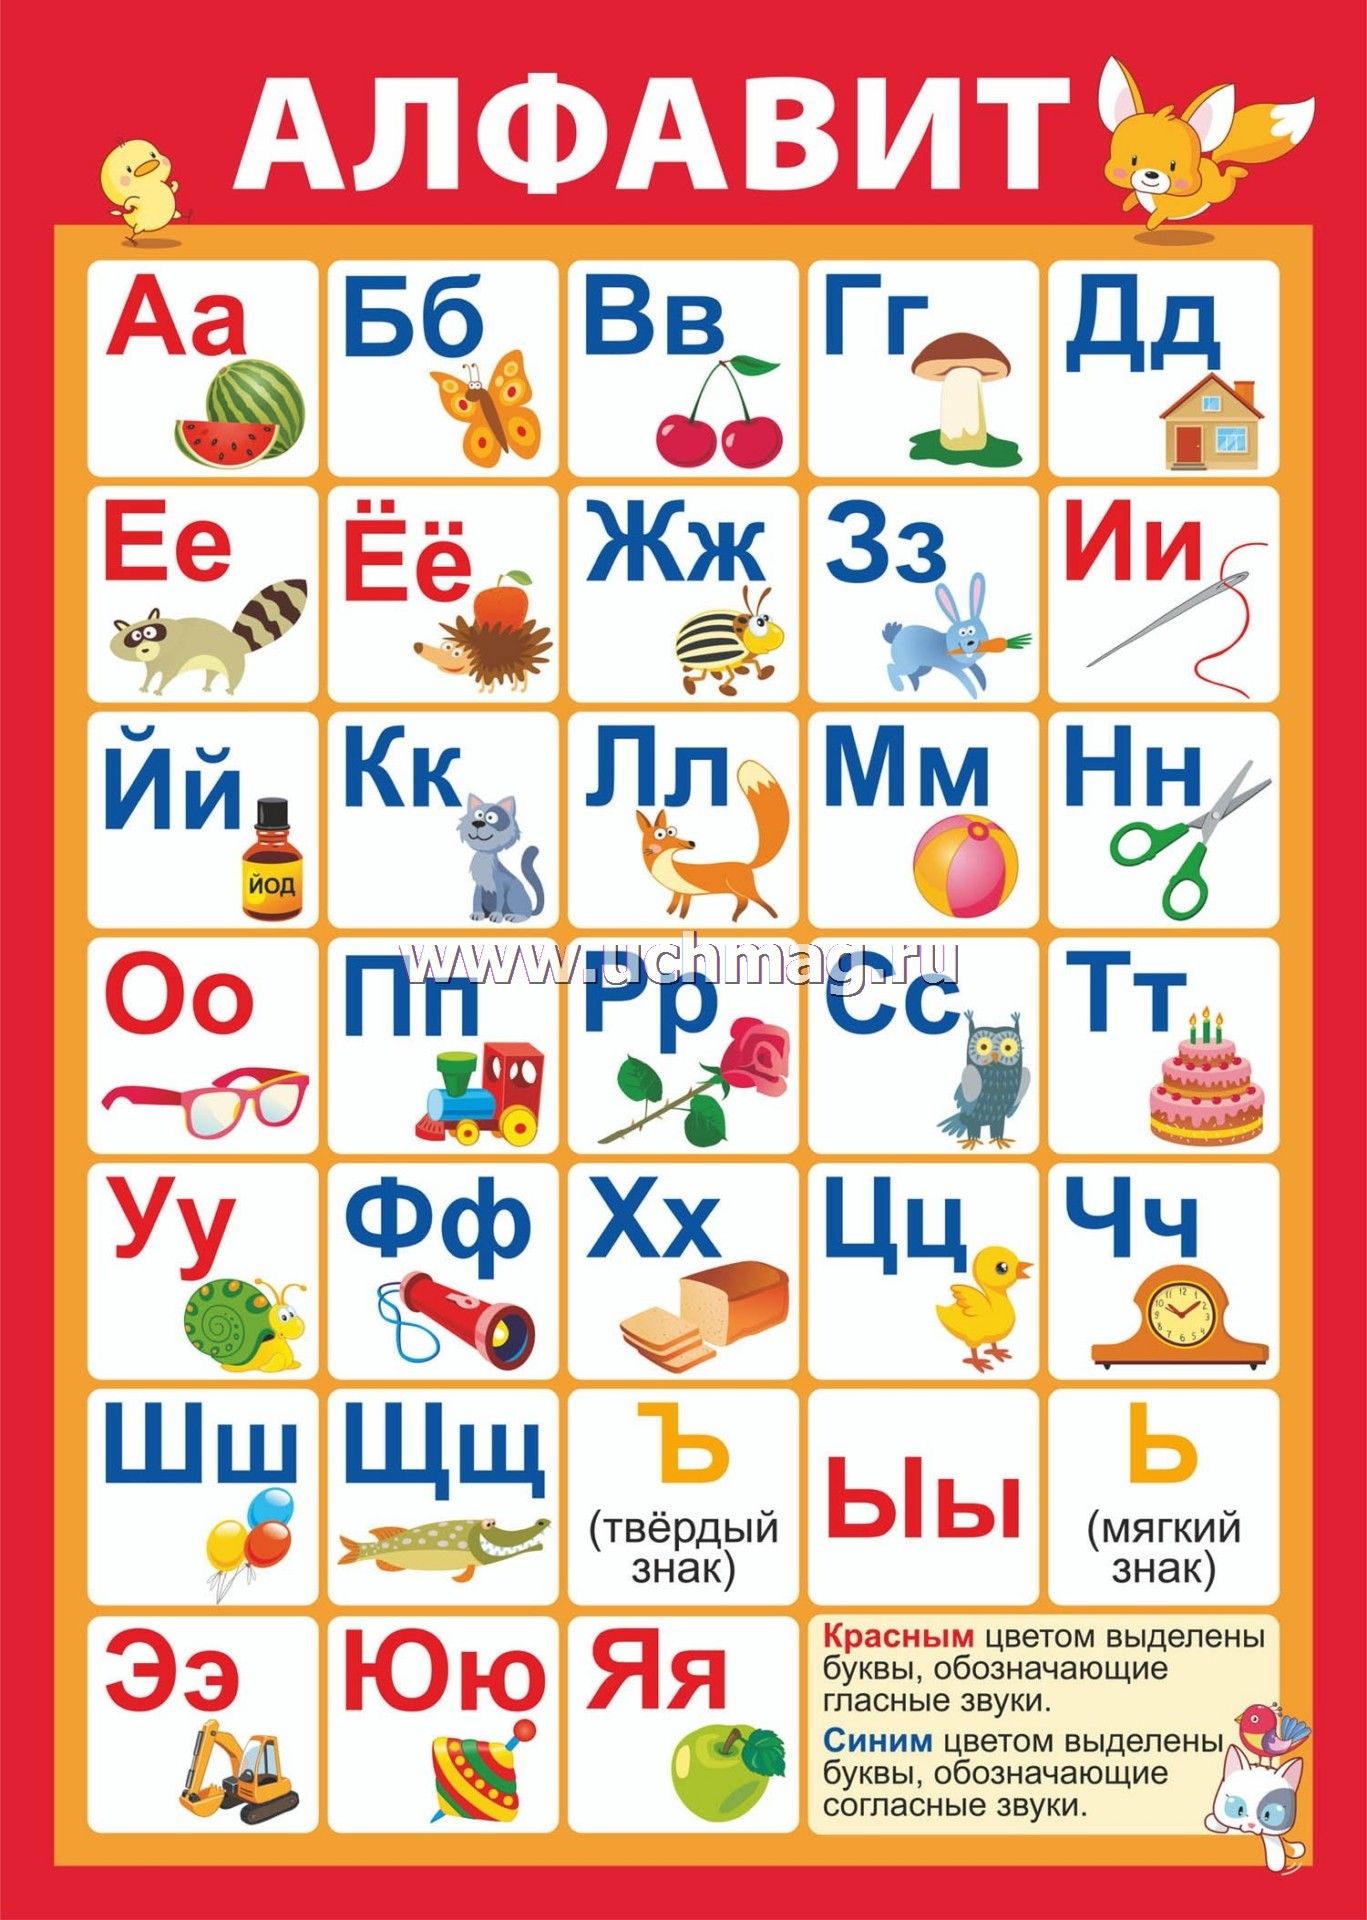 Звучание алфавита. Плакат с буквами для детей. Алфавит со звуками. Русский алфавит. Звуки и буквы плакат для детей.